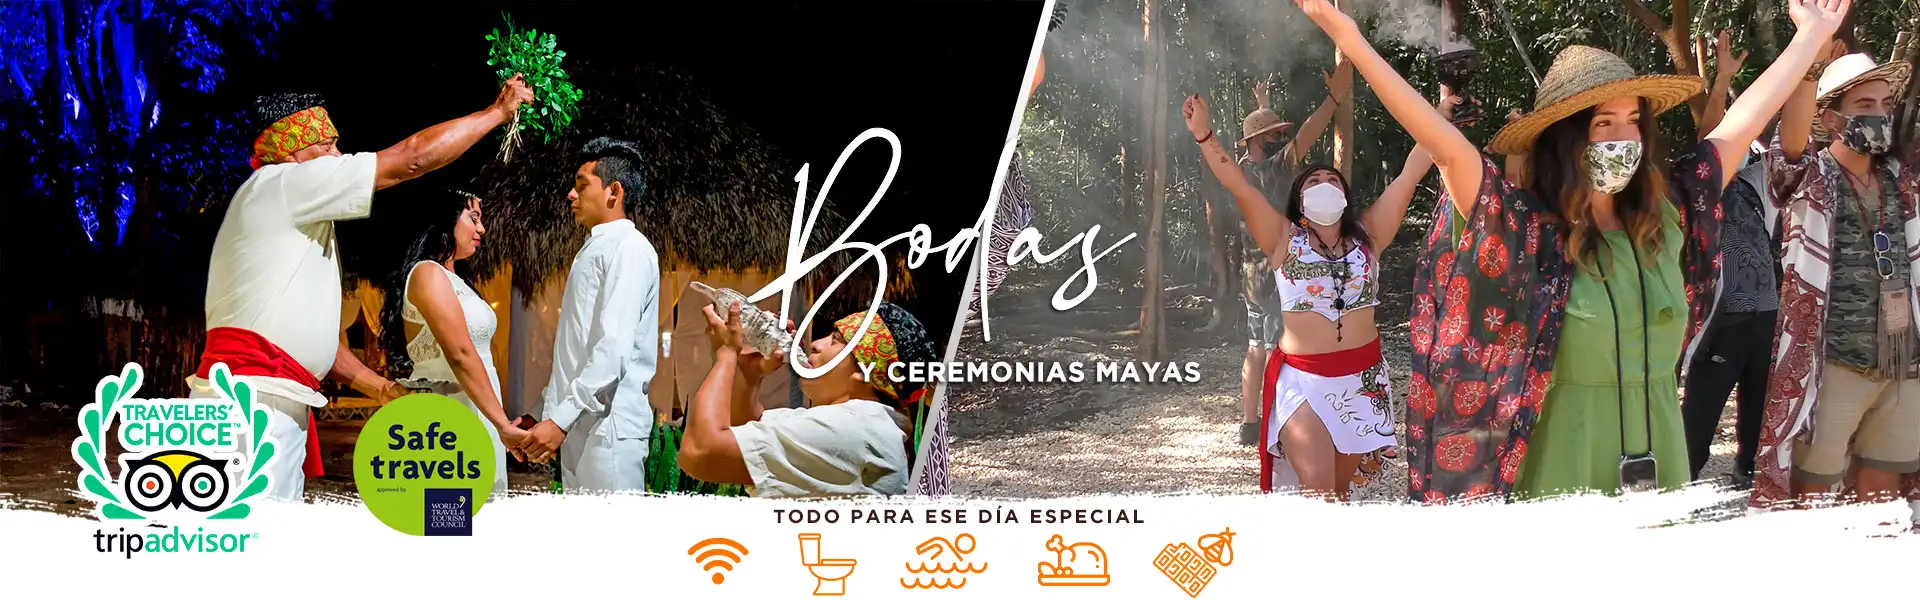 bodas-mayas-y-rituales-de-purificacion-en-riviera-maya-tulum-coba